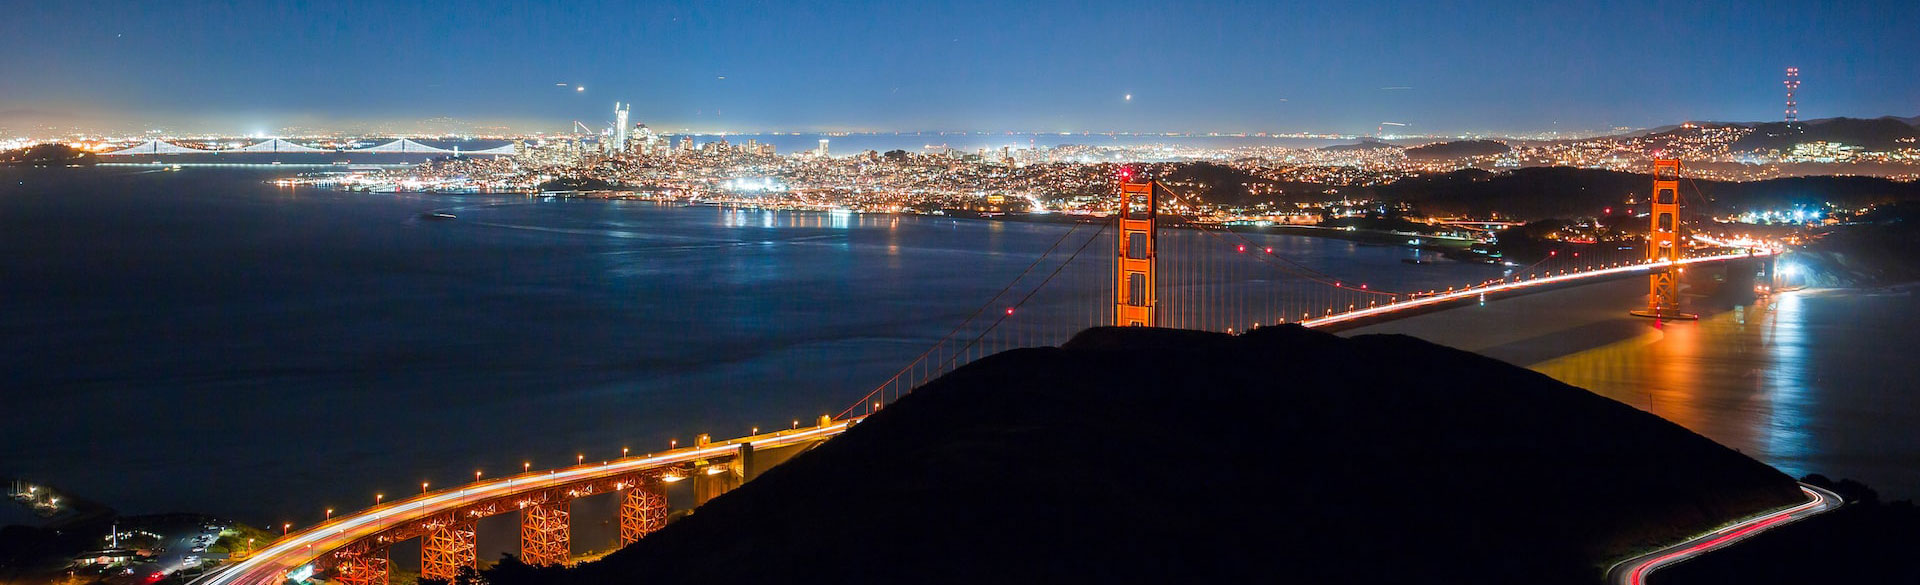 Baía de São Francisco e Ponte Golden Gate à noite